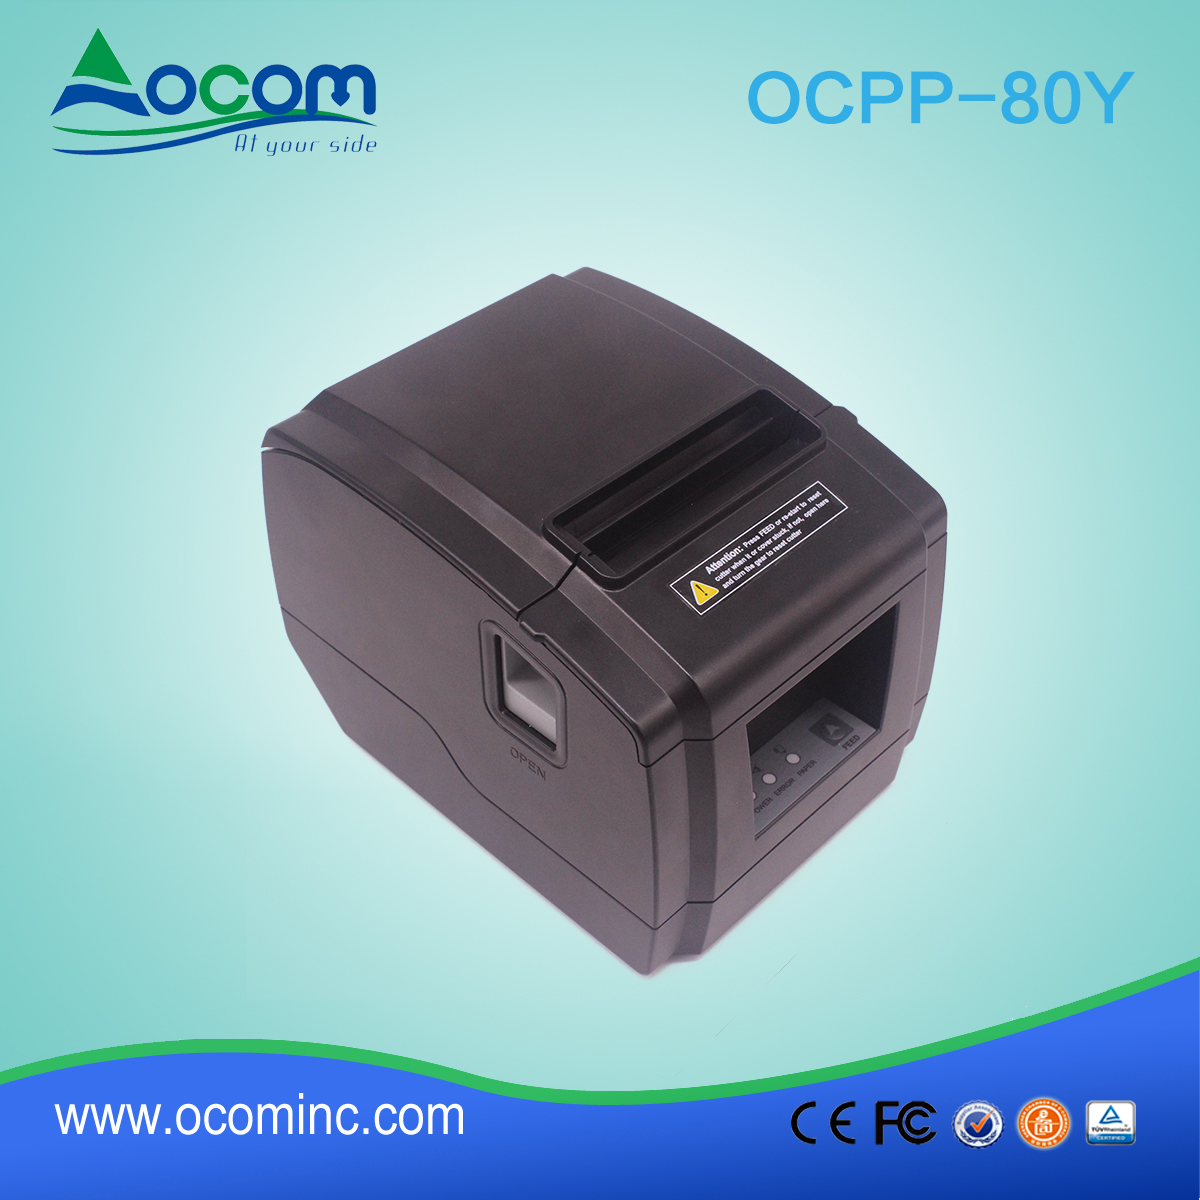 OCPP-80Y - недорогой 80-миллиметровый термопринтер для печати оптом